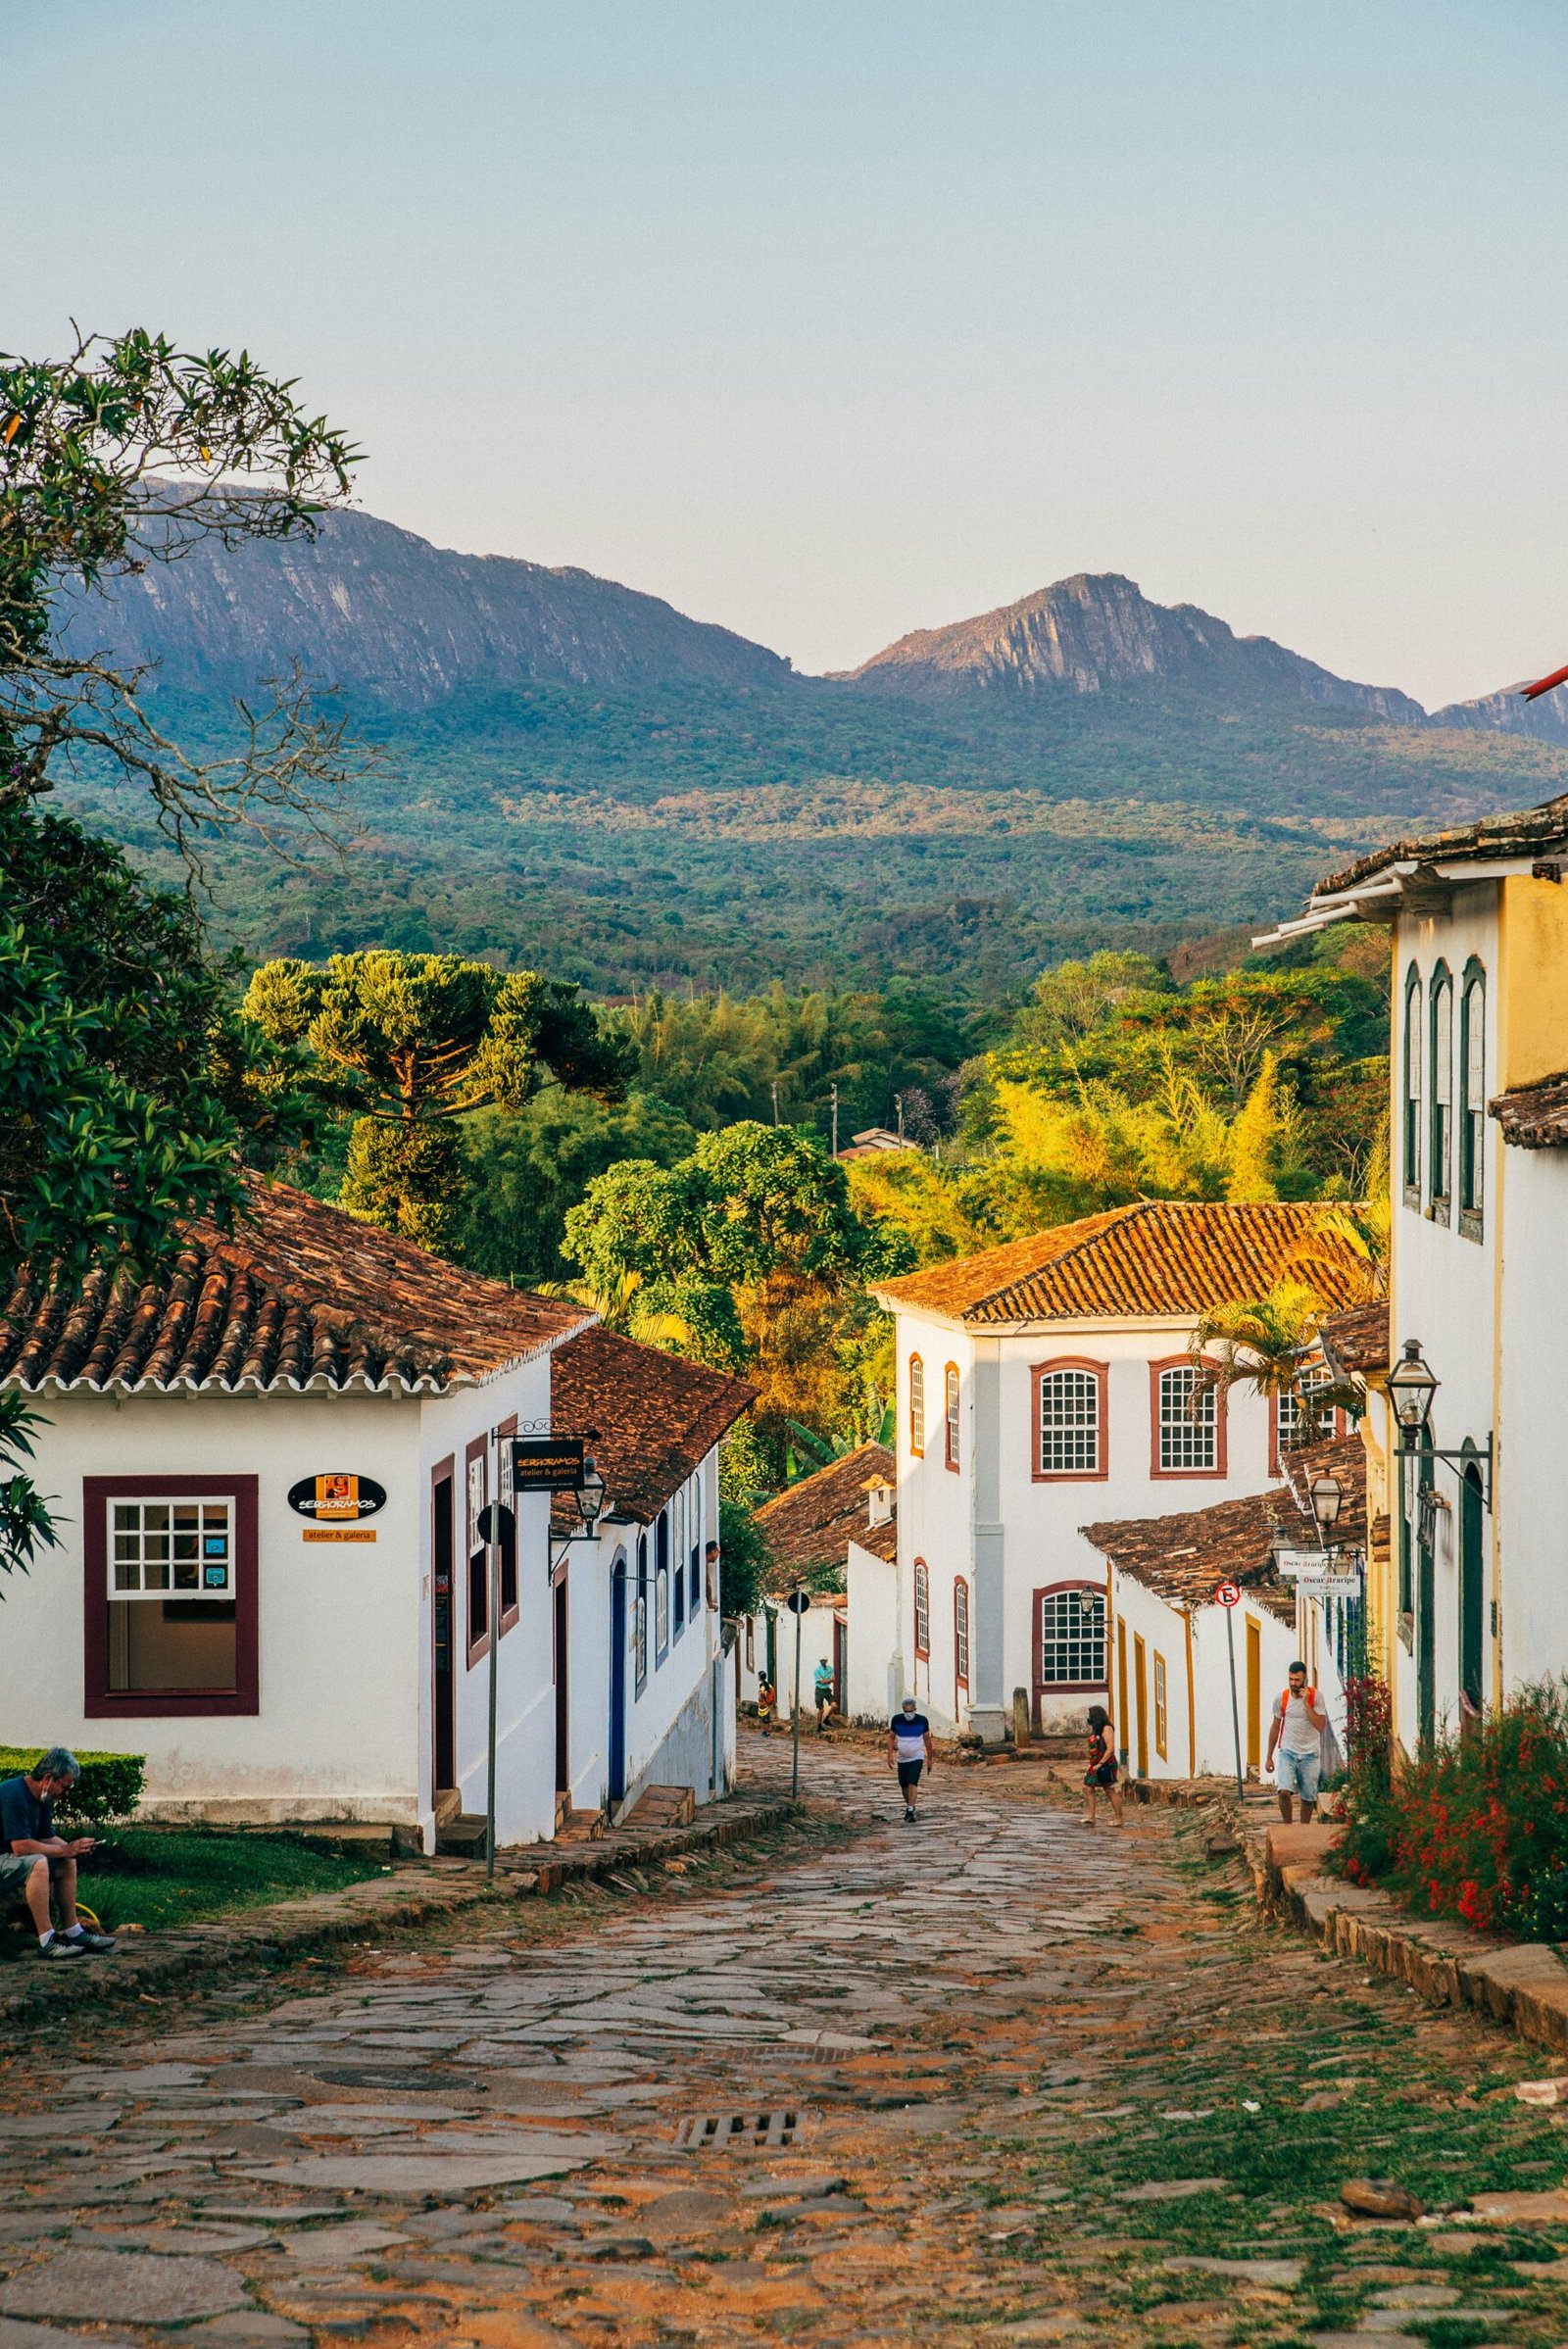 Descobrindo a encantadora Tiradentes: um destino turístico de história, beleza e gastronomia em Minas Gerais